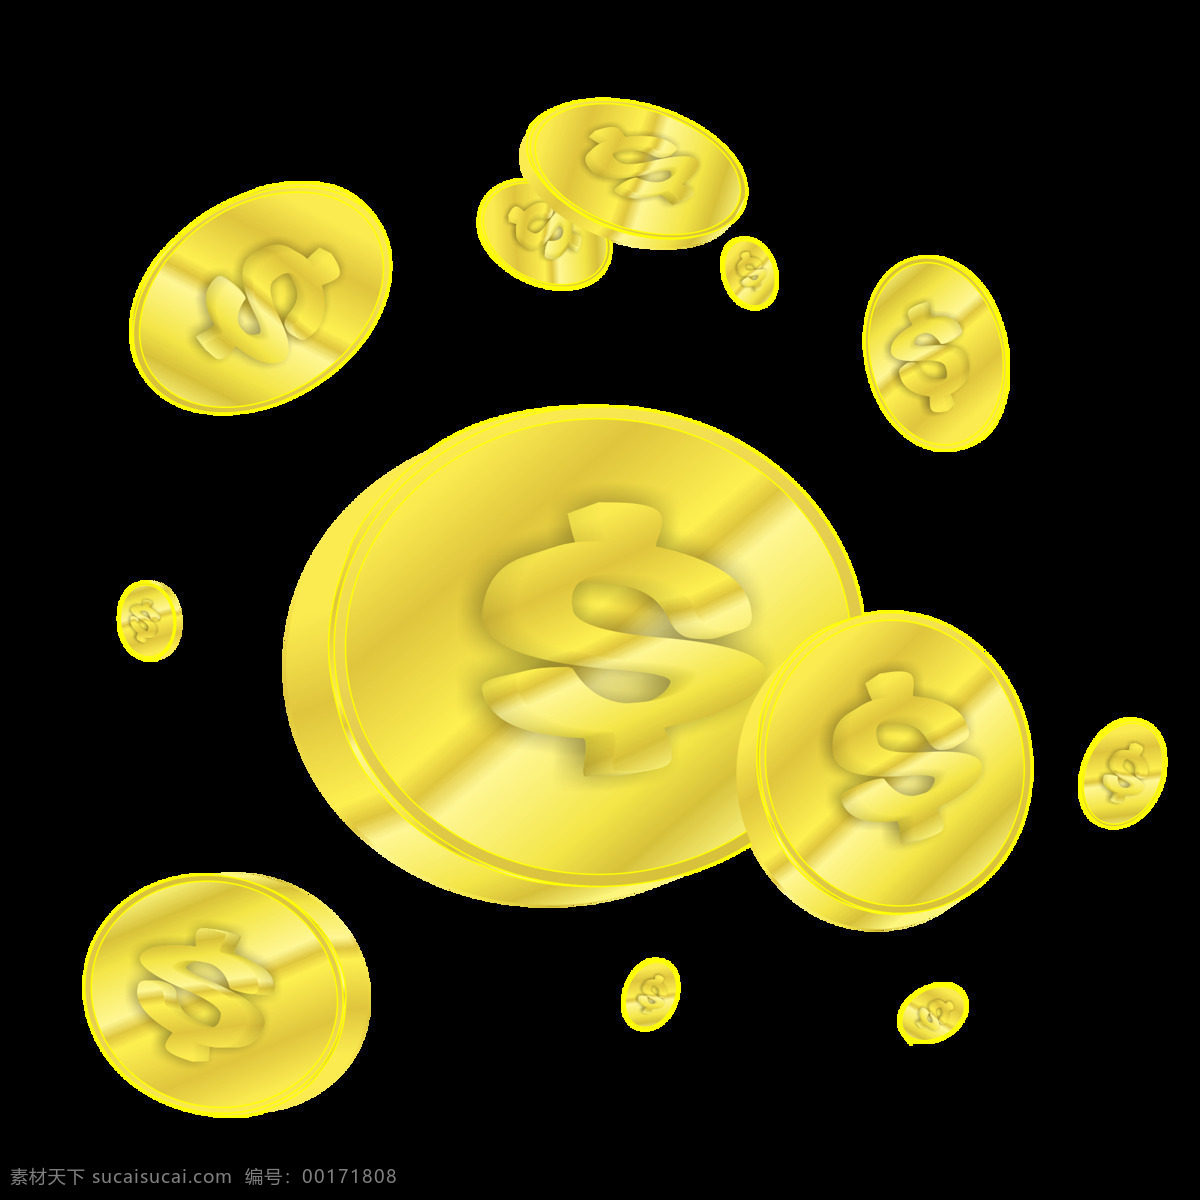 美元 符号 金币 立体 金色 漂浮 元素 原创 圆形 渐变 美元符号 漂浮元素 分图层 椭圆形